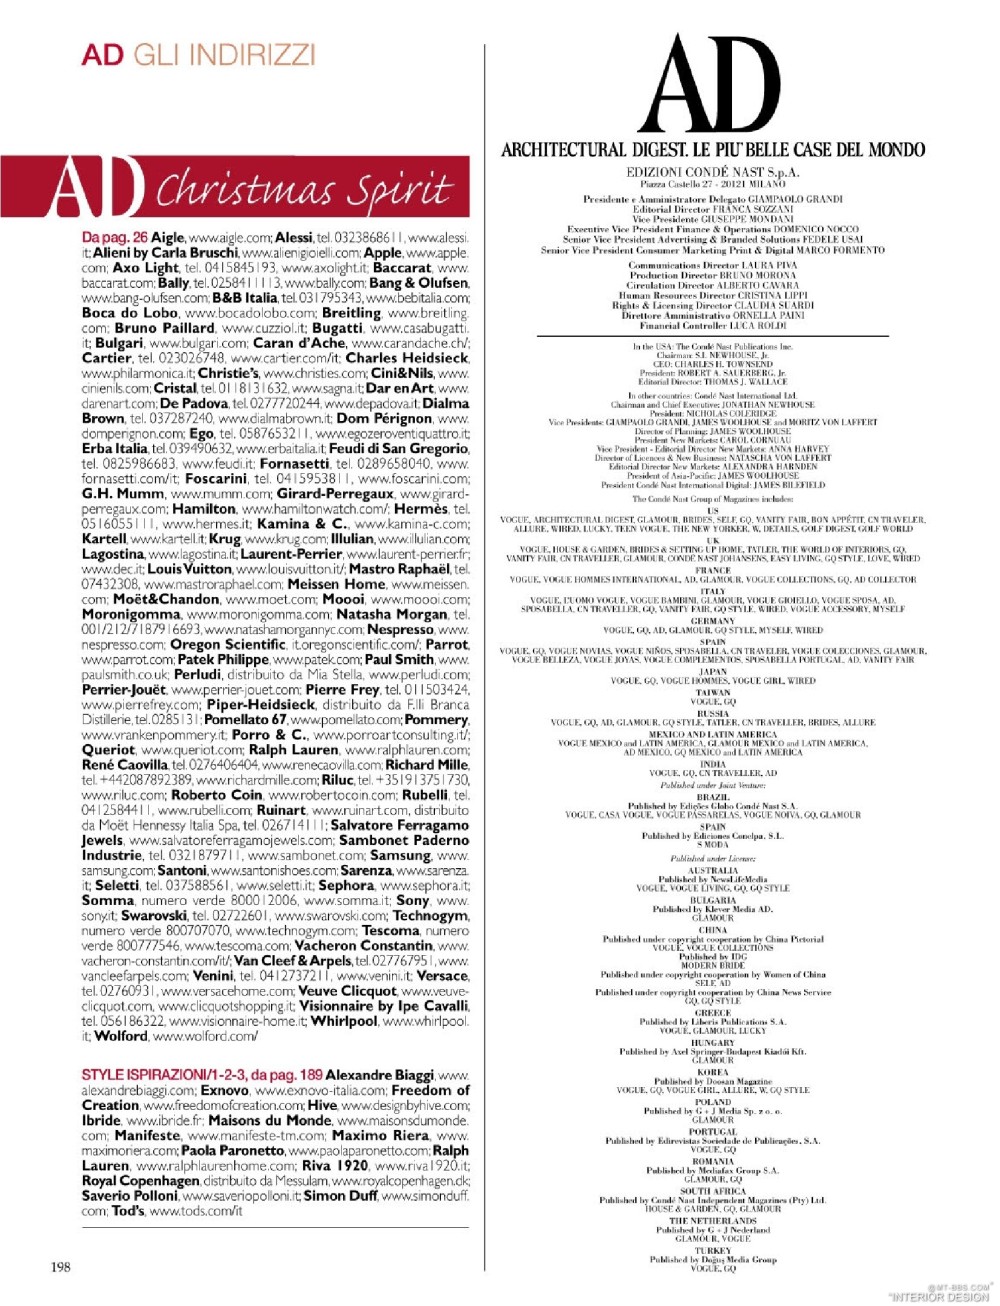 意大利AD 杂志 2012年全年JPG高清版本 全免（上传完毕）_0200.jpg